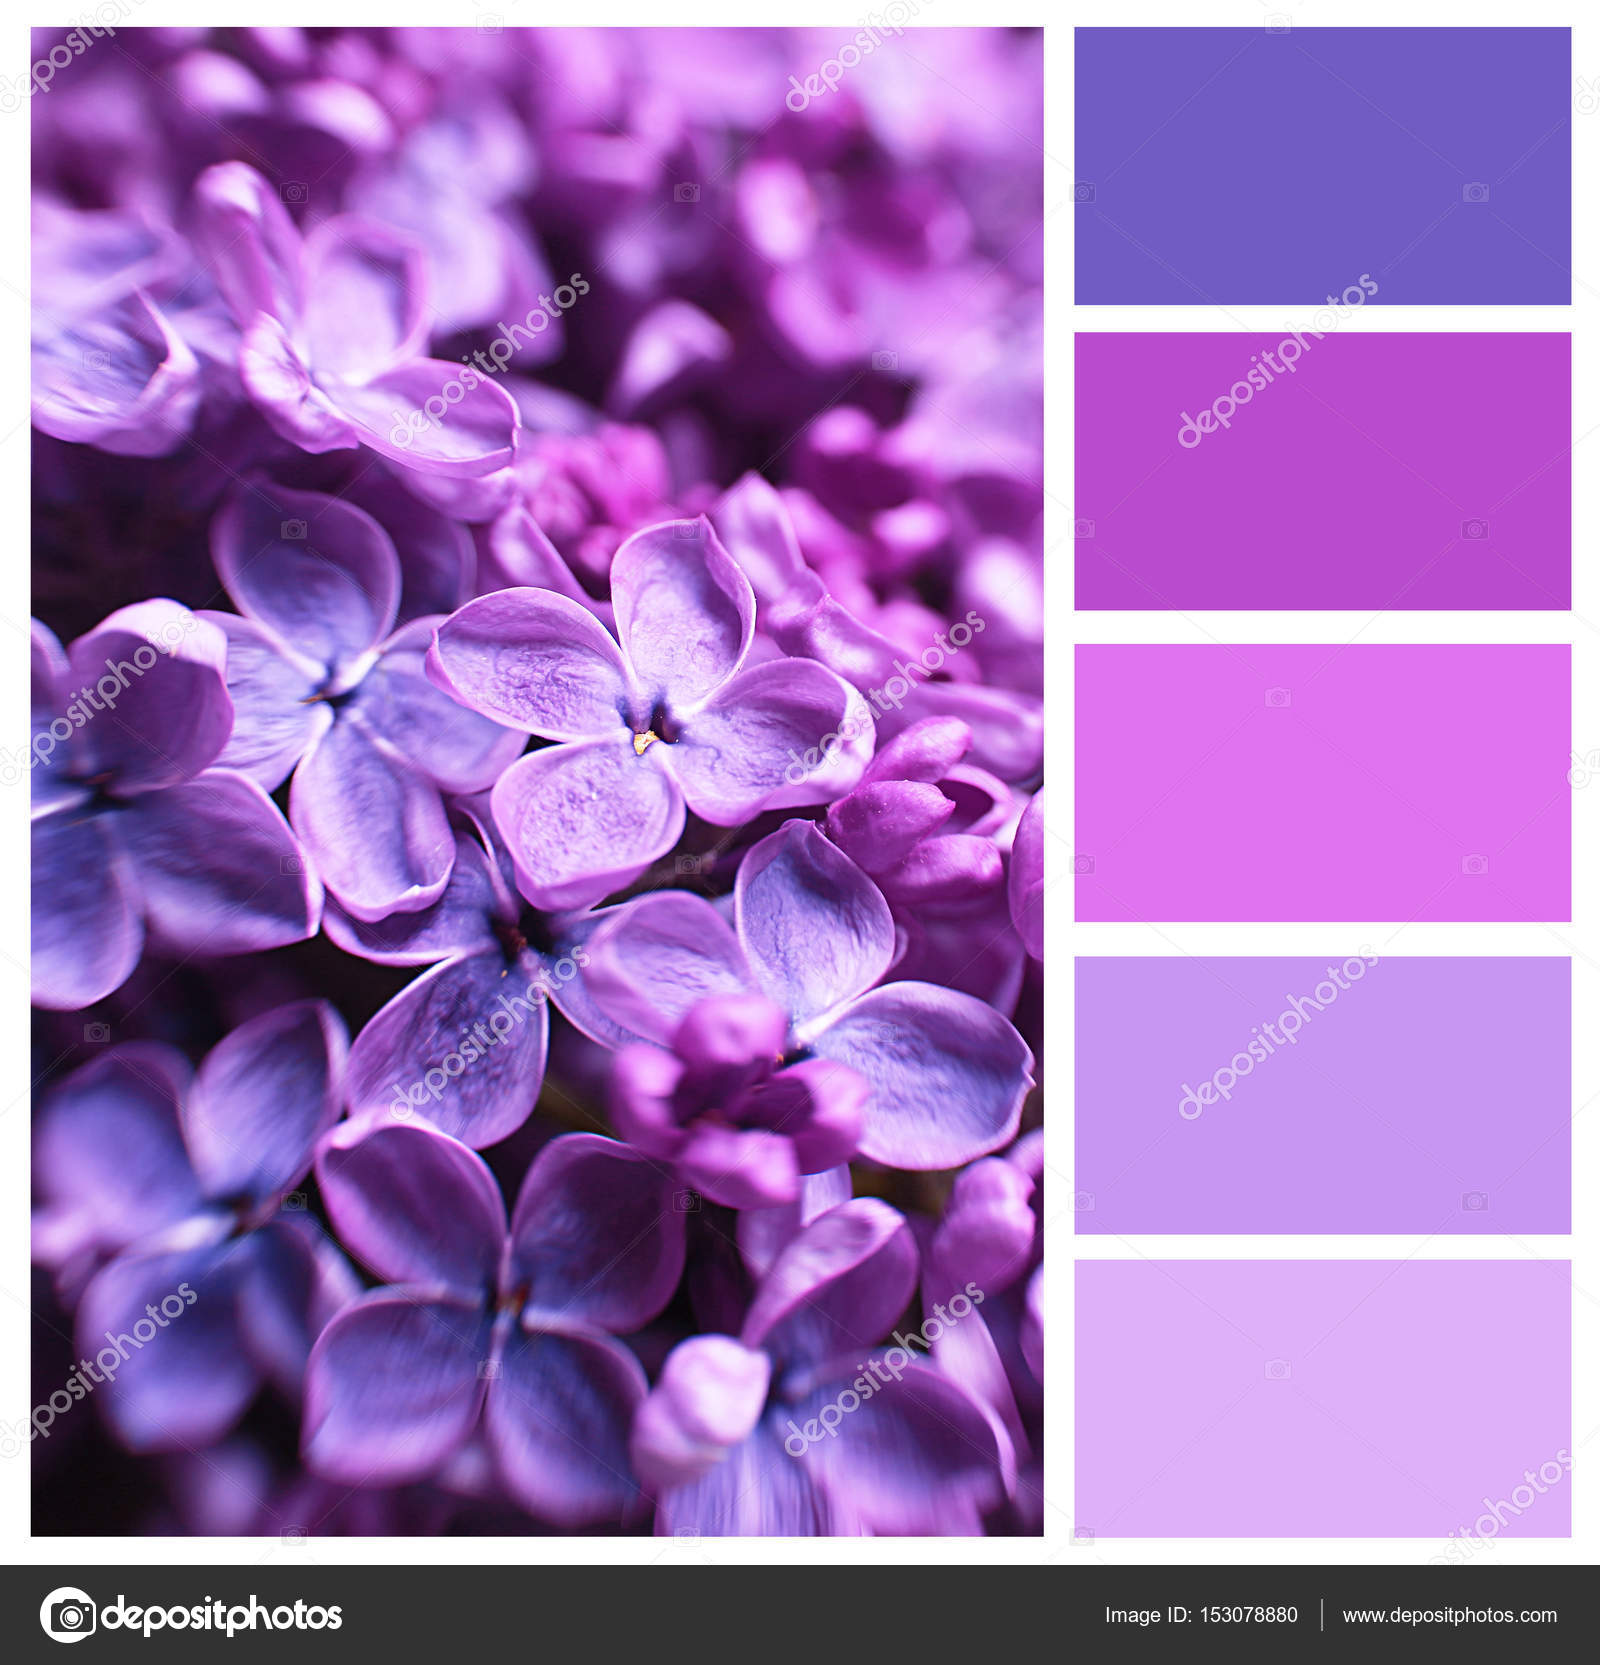 Камни лилового цвета фото и названия